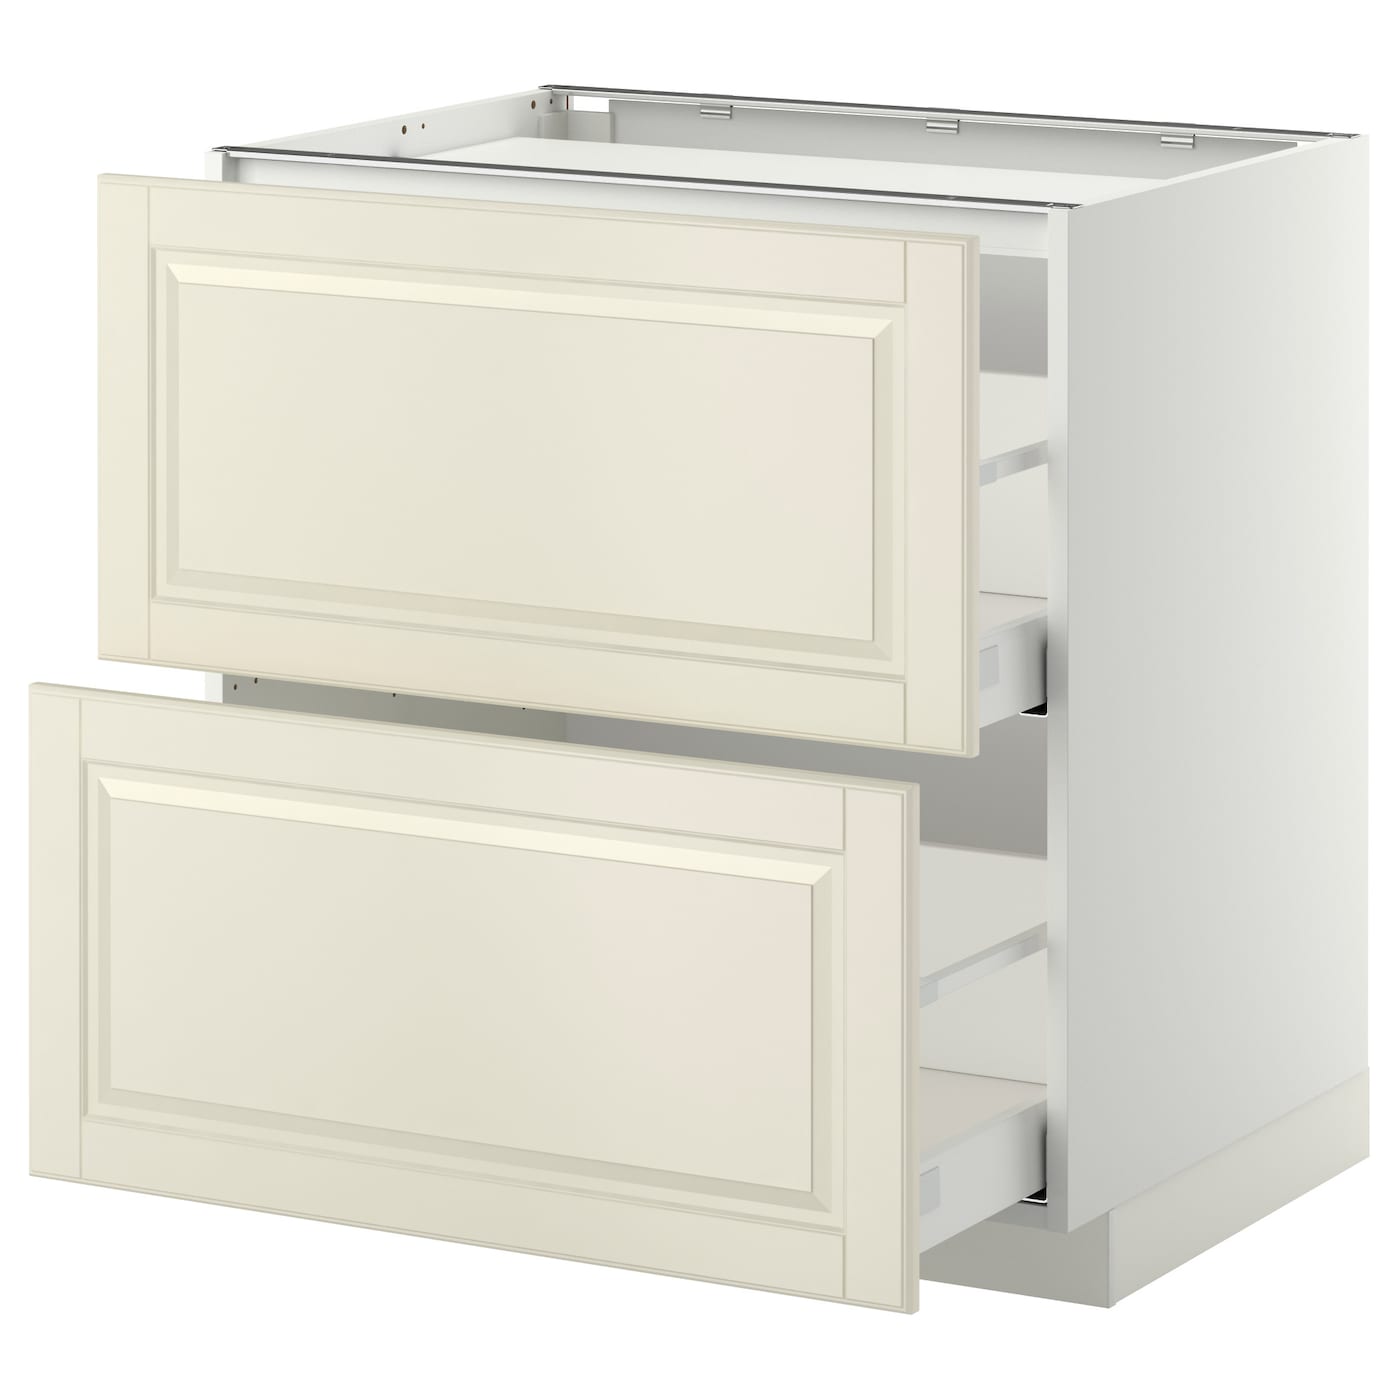 Напольный шкаф - METOD / MAXIMERA IKEA/ МЕТОД/ МАКСИМЕРА ИКЕА,  80х88 см, белый/светло-бежевый